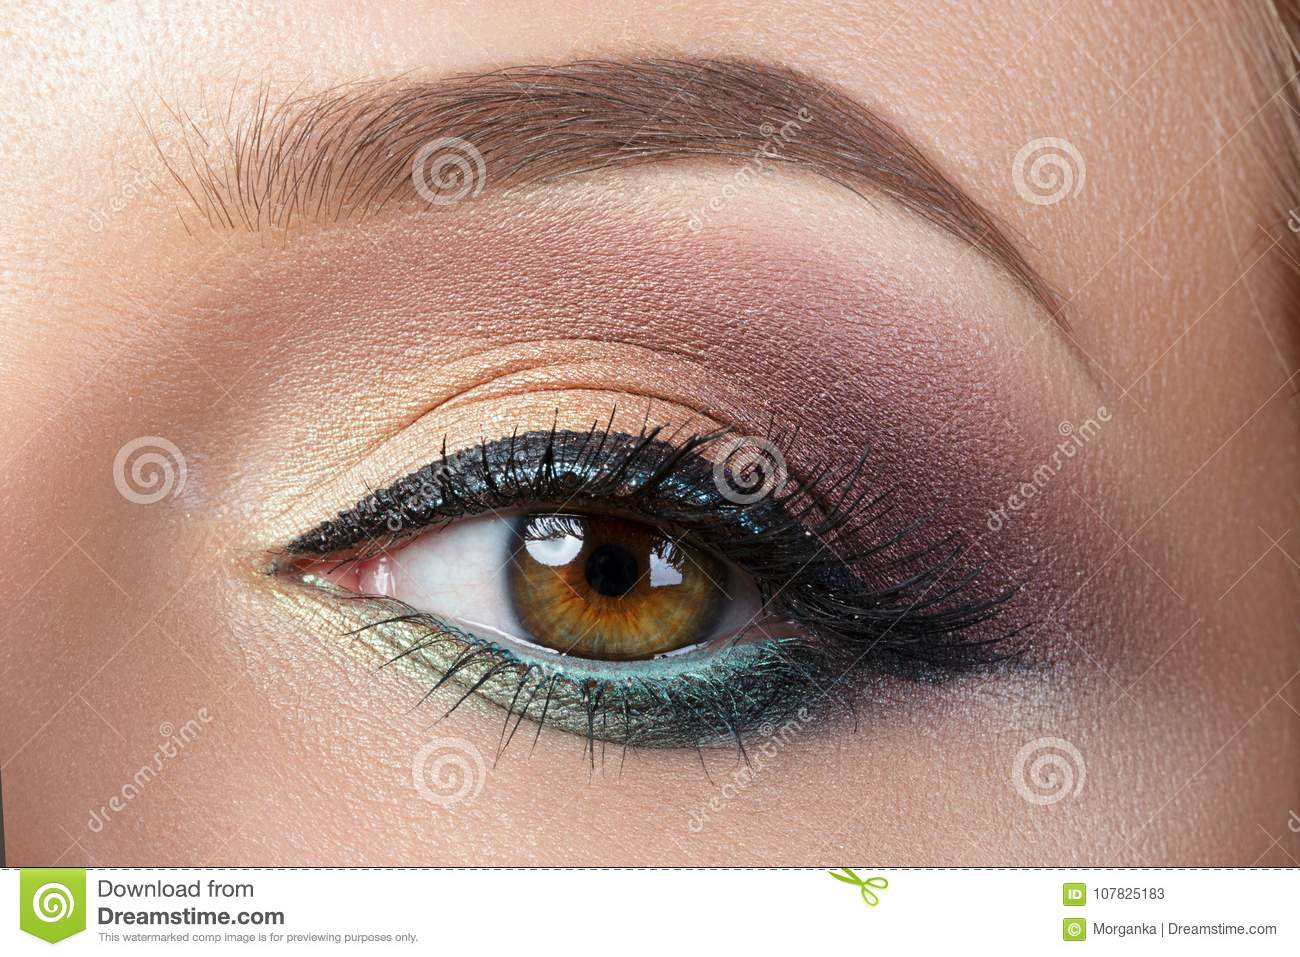 Evening Eye Makeup Closeup View Of Woman Eye With Evening Makeup Stock Image Image Of